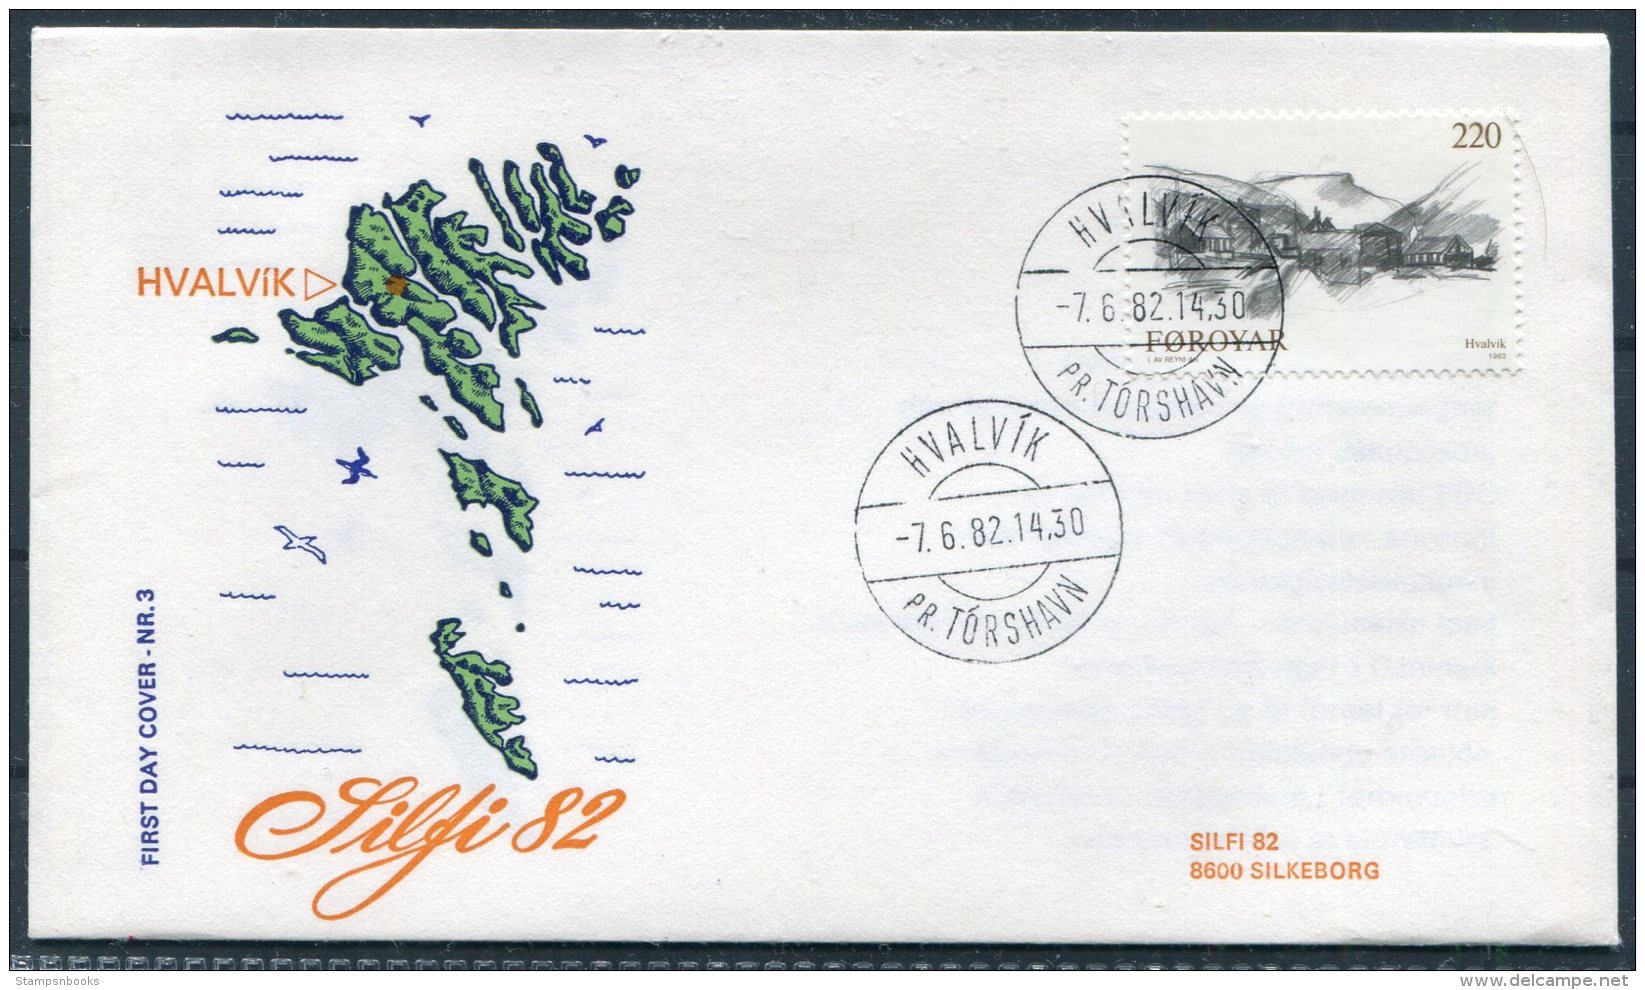 1982 Faroe Islands / Faroyar Denamrk Philatelic Exhibition SILFI '82 Silkeborg Cover. Hvalvik Pr. Torshavn - Faroe Islands